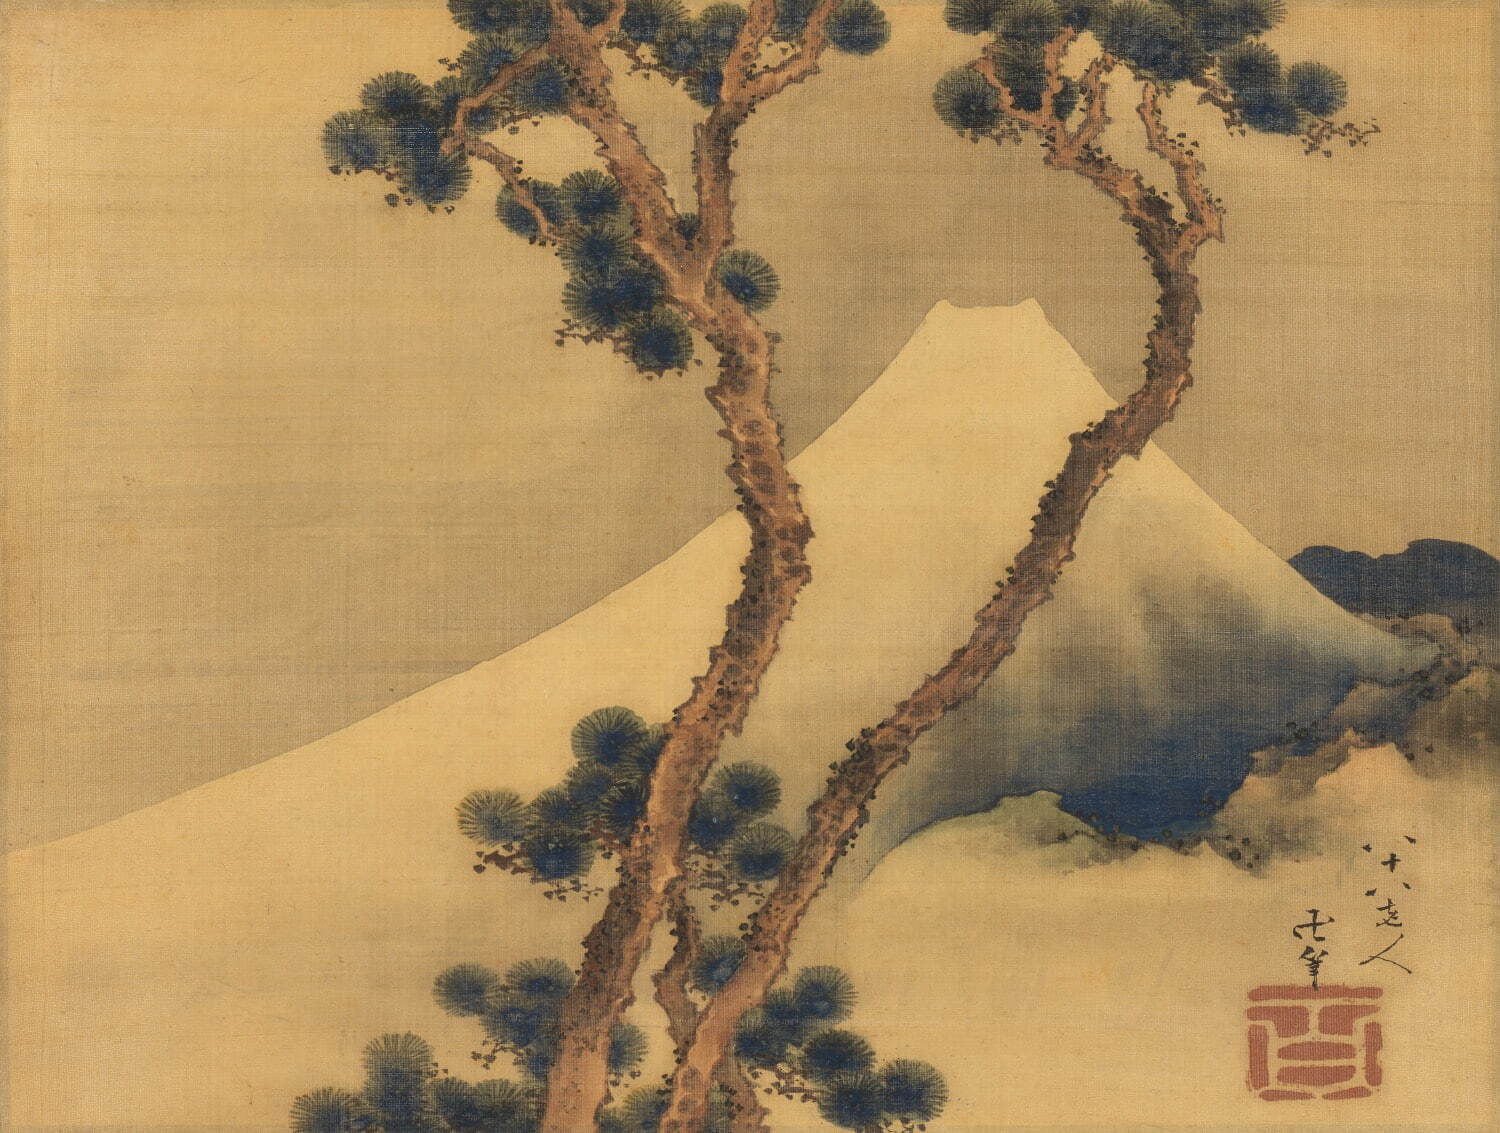 葛飾北斎 《松に富士図》 弘化4年(1847年)
絹本着色 一幅 28.7 × 37.6cm